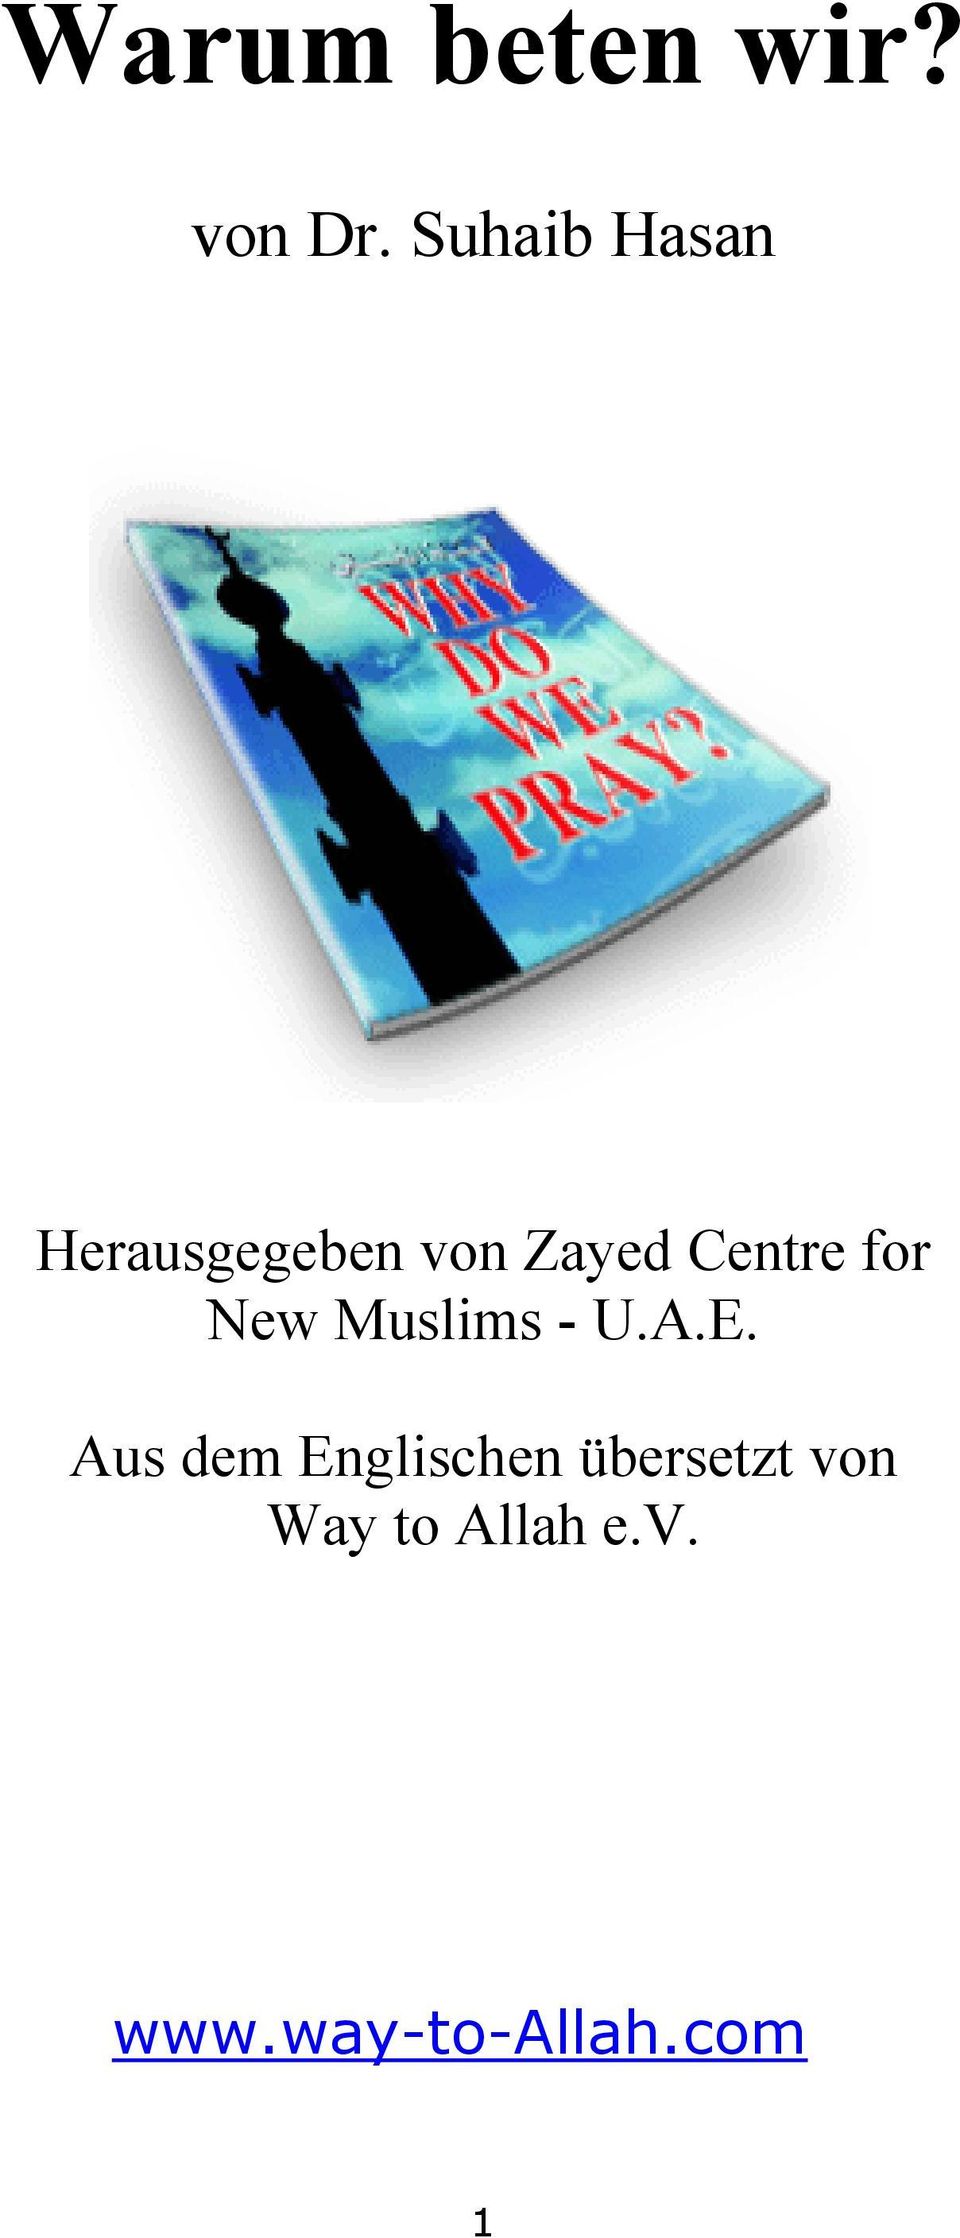 Centre for New Muslims - U.A.E.